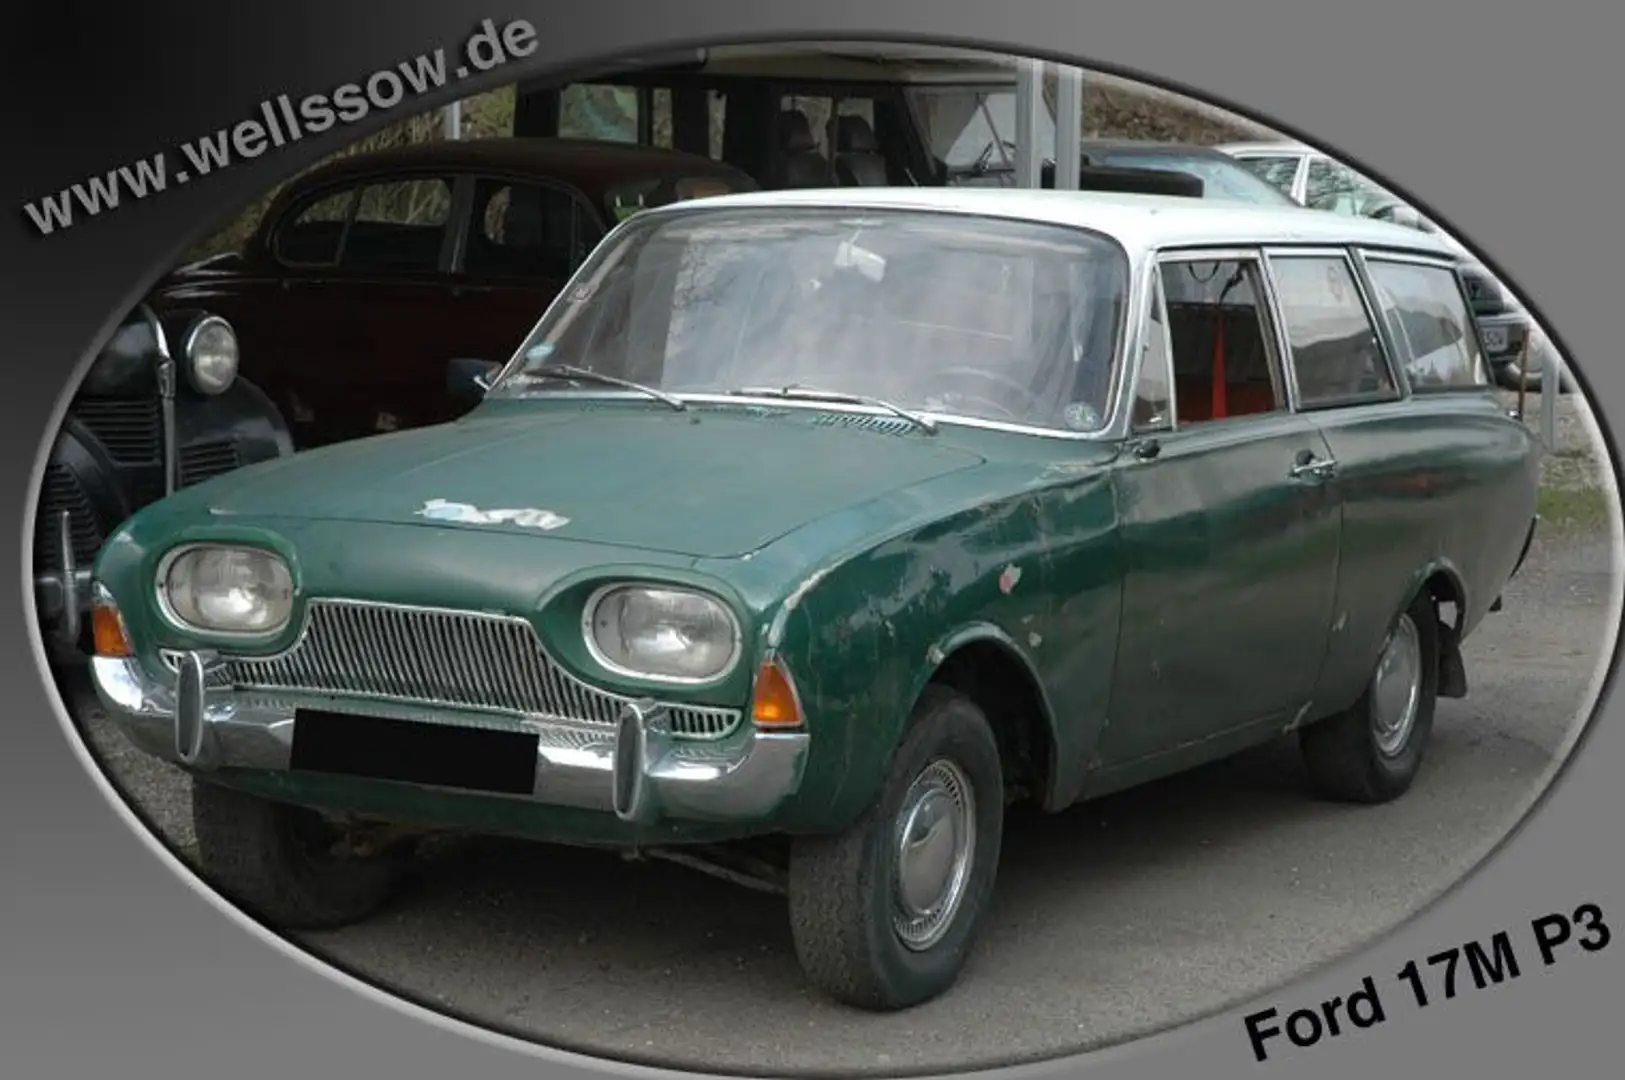 Ford Taunus 17m P3 Kombi Badewanne Scheunenfund Zöld - 1